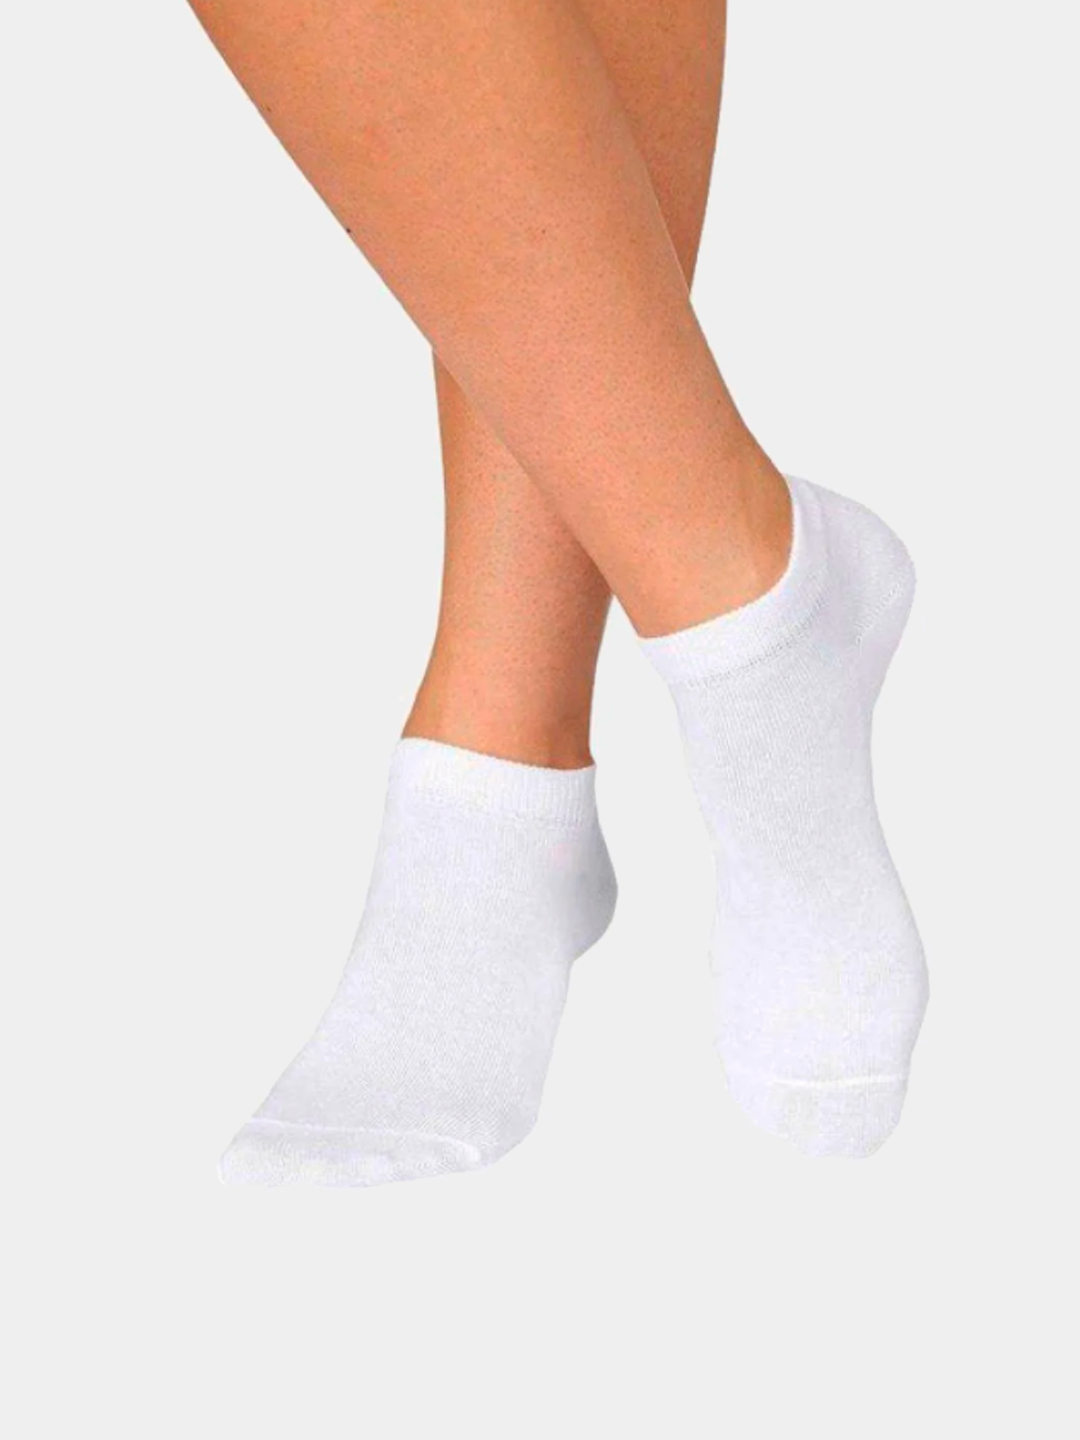 Низкие носочки. Белые носки. Носочки женские. Носки белые короткие. Носки белые короткие женские.